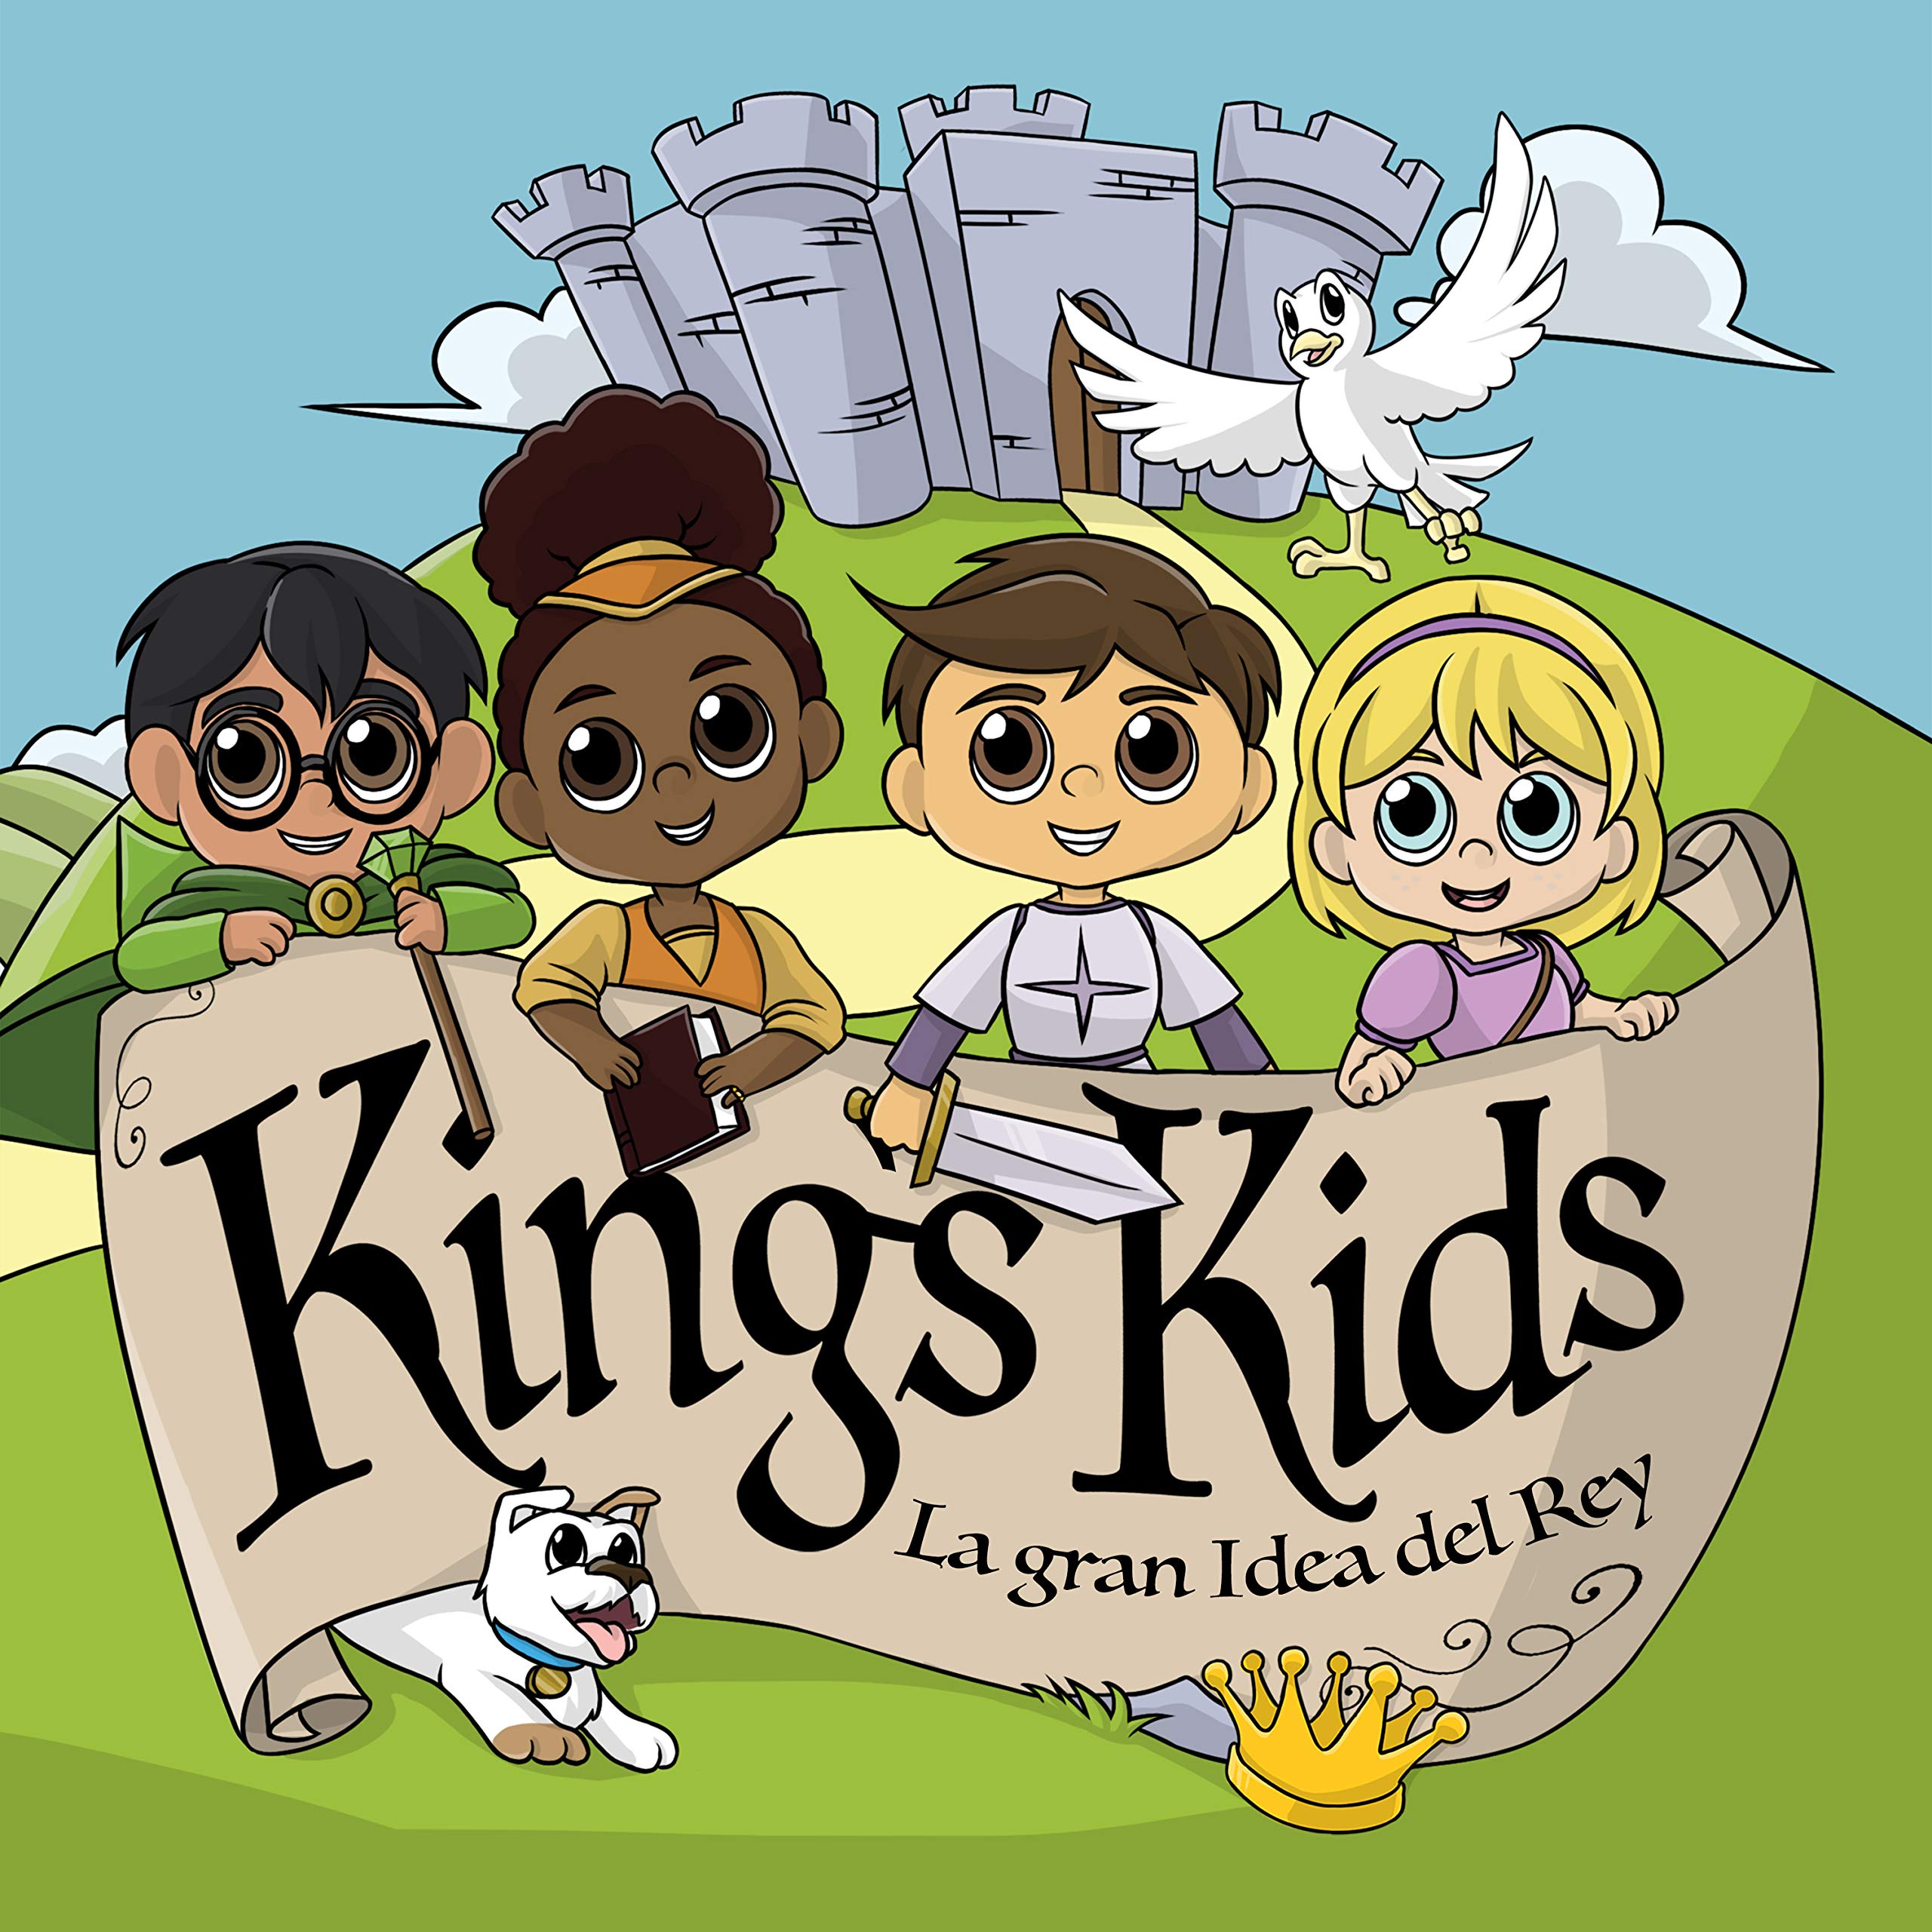 King's Kids